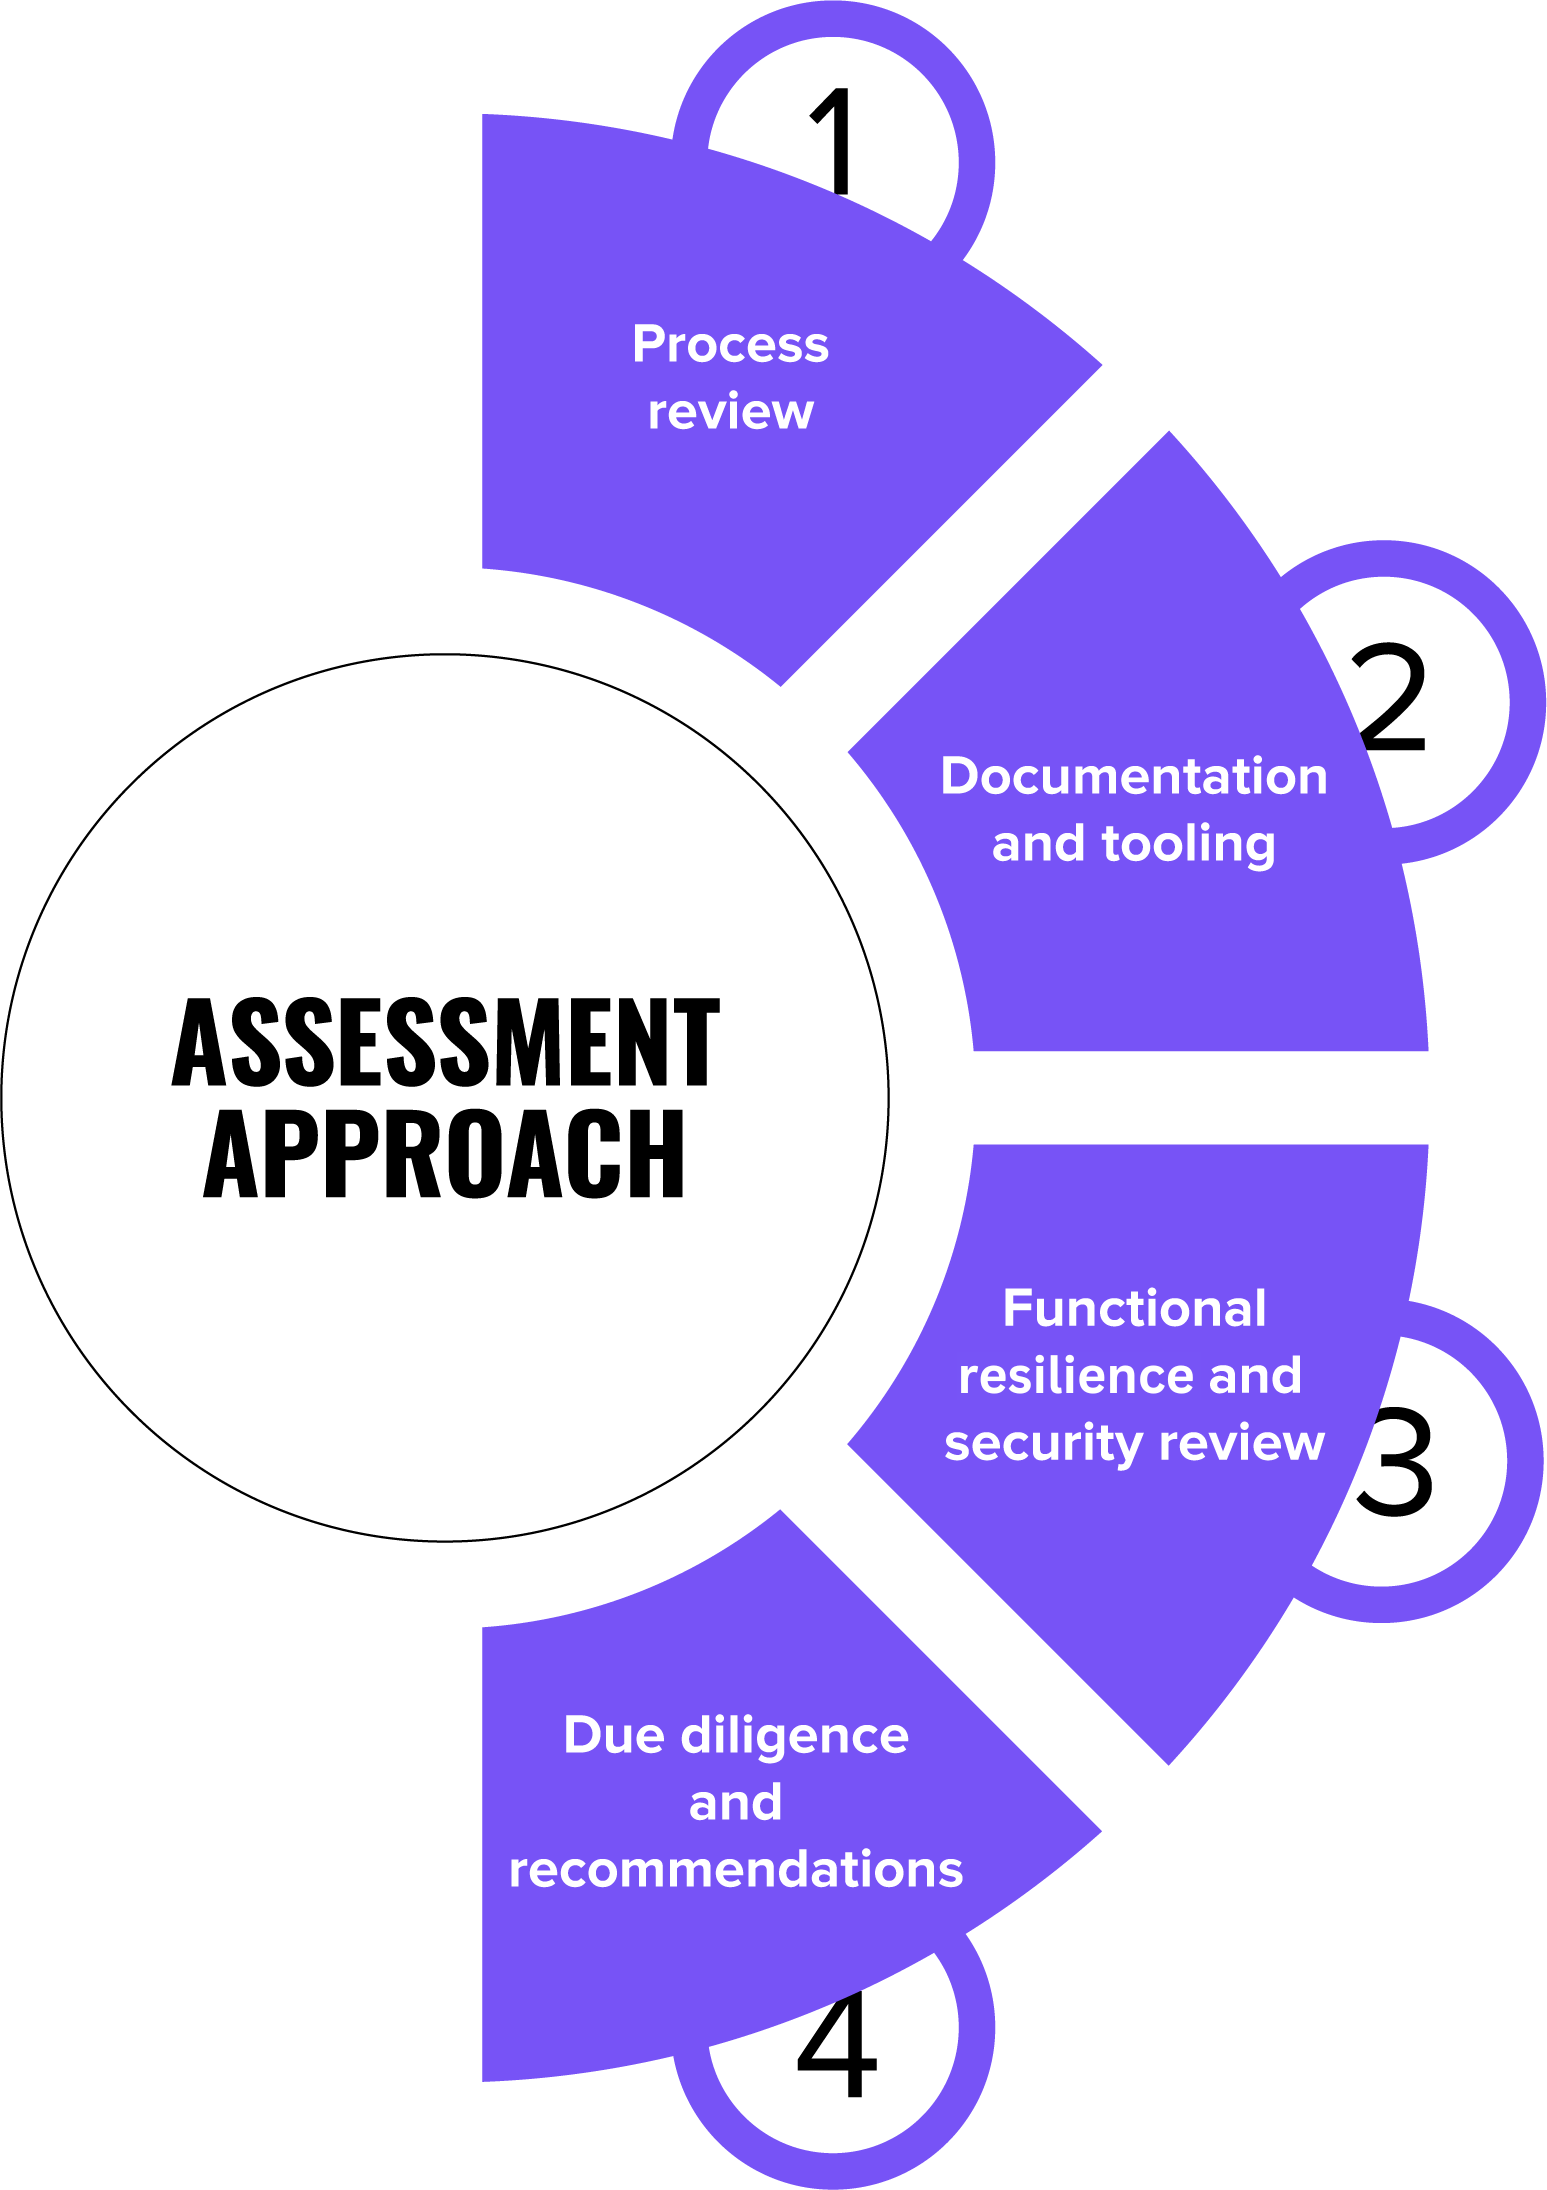 Assessment approach